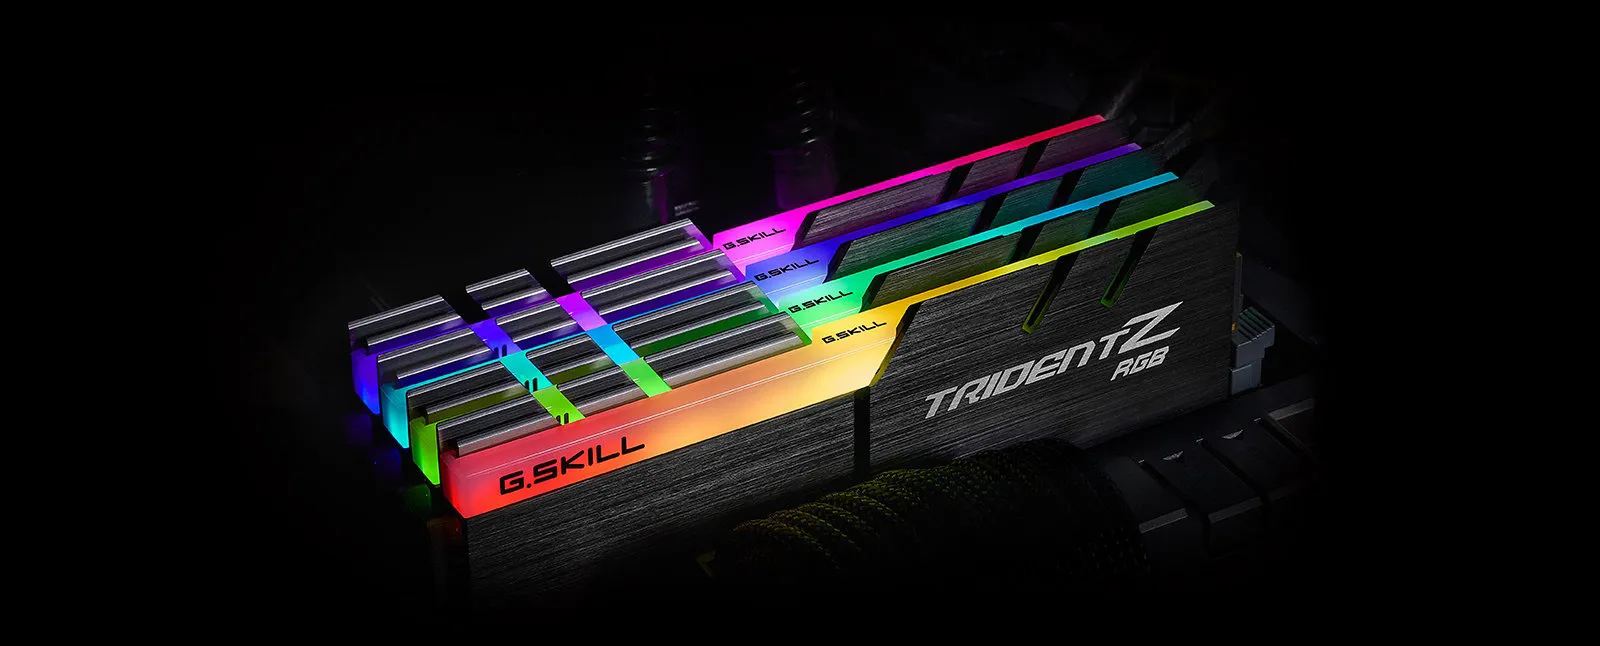 RAM Desktop DDR4 G.Skill TRIDENT Z RGB 16GB 3600 MTs F4 3600C18S 16GTZR 4